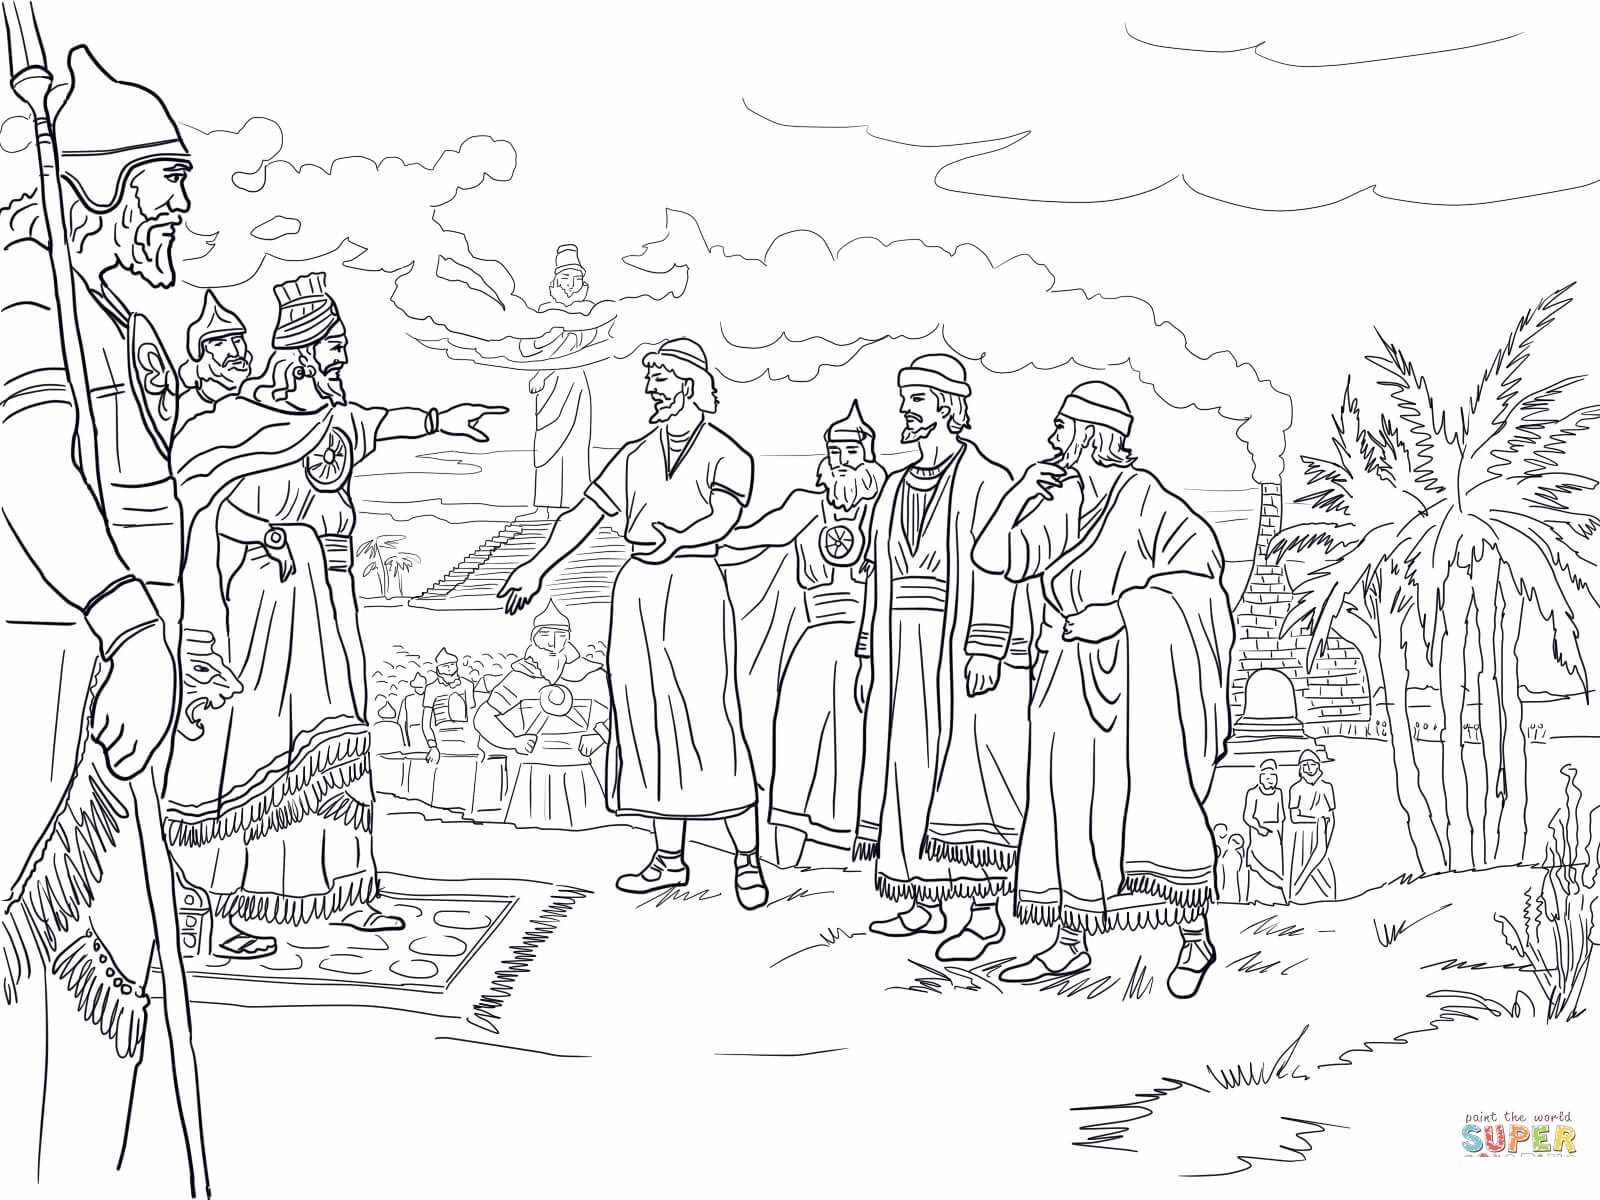 Šadrah, Mešah i Abednego Pred kraljem Nabukodonozorom